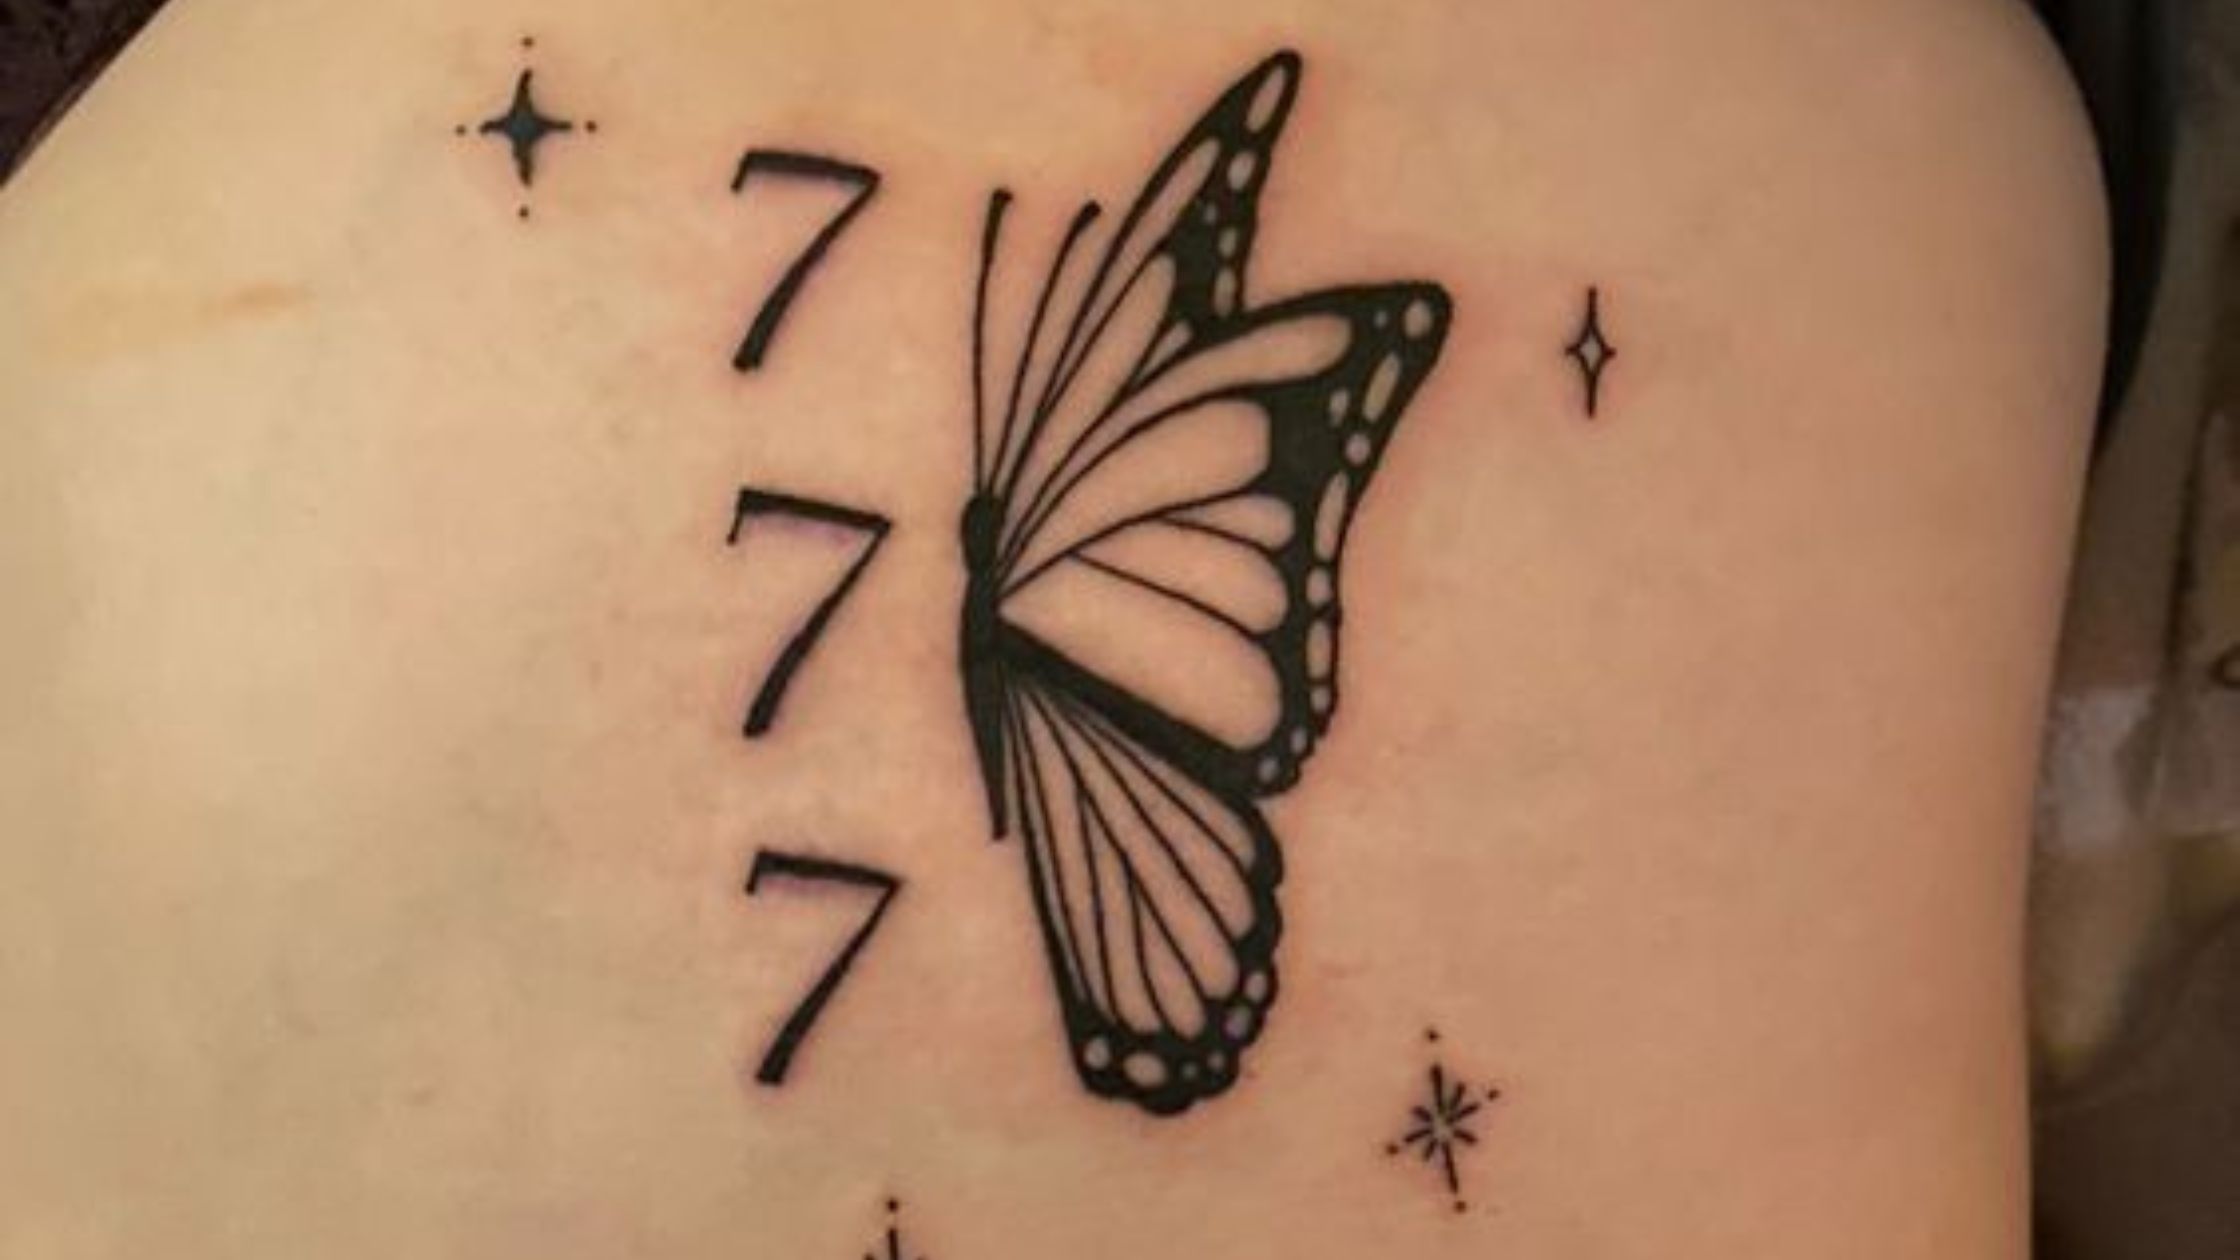 777 tattoo ideas